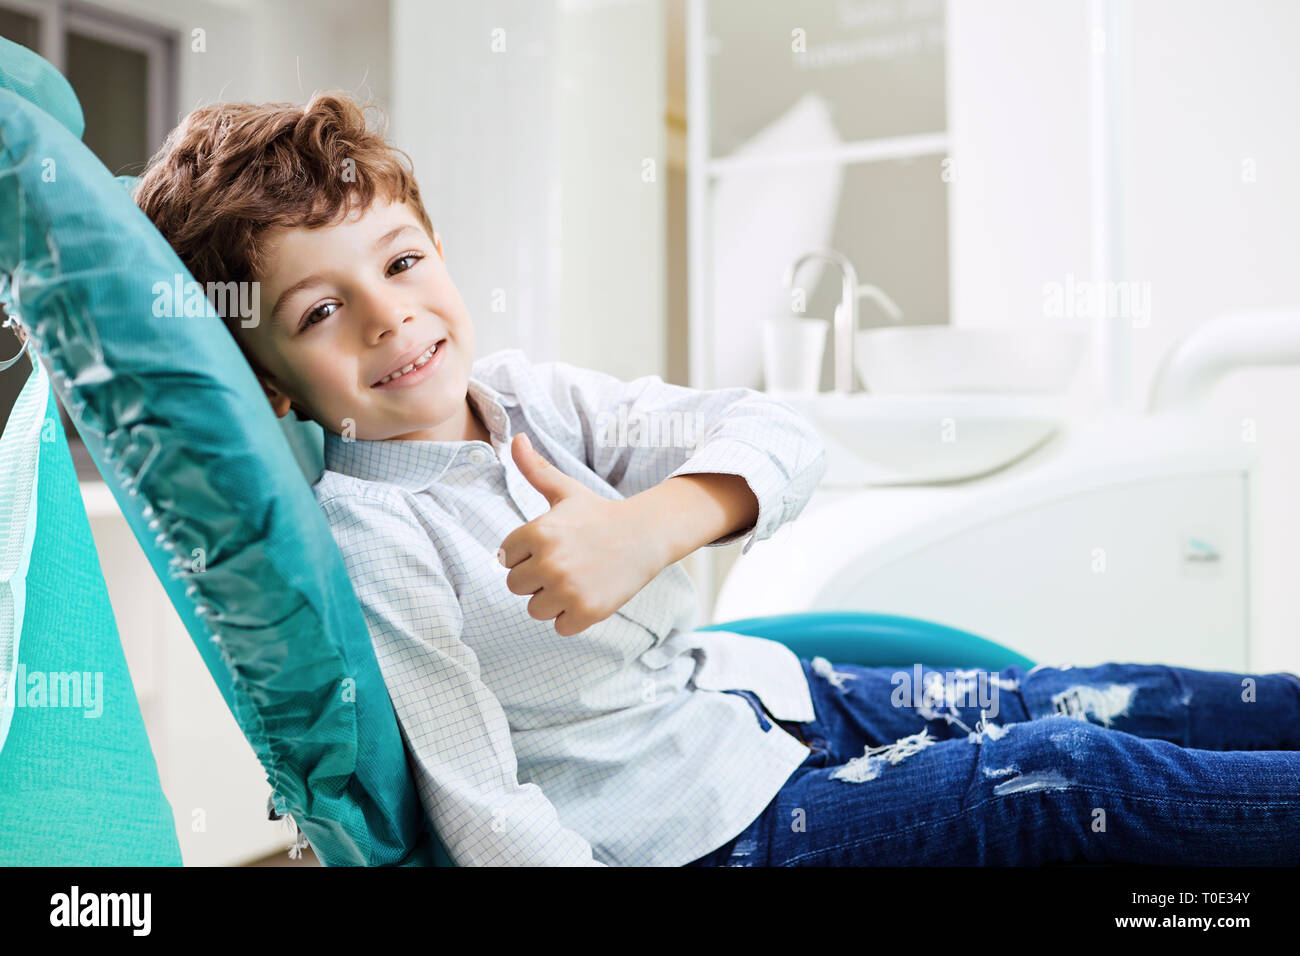 Odontoiatria infantile concetto. Il ragazzo è sorridente in studio dentistico. Foto Stock